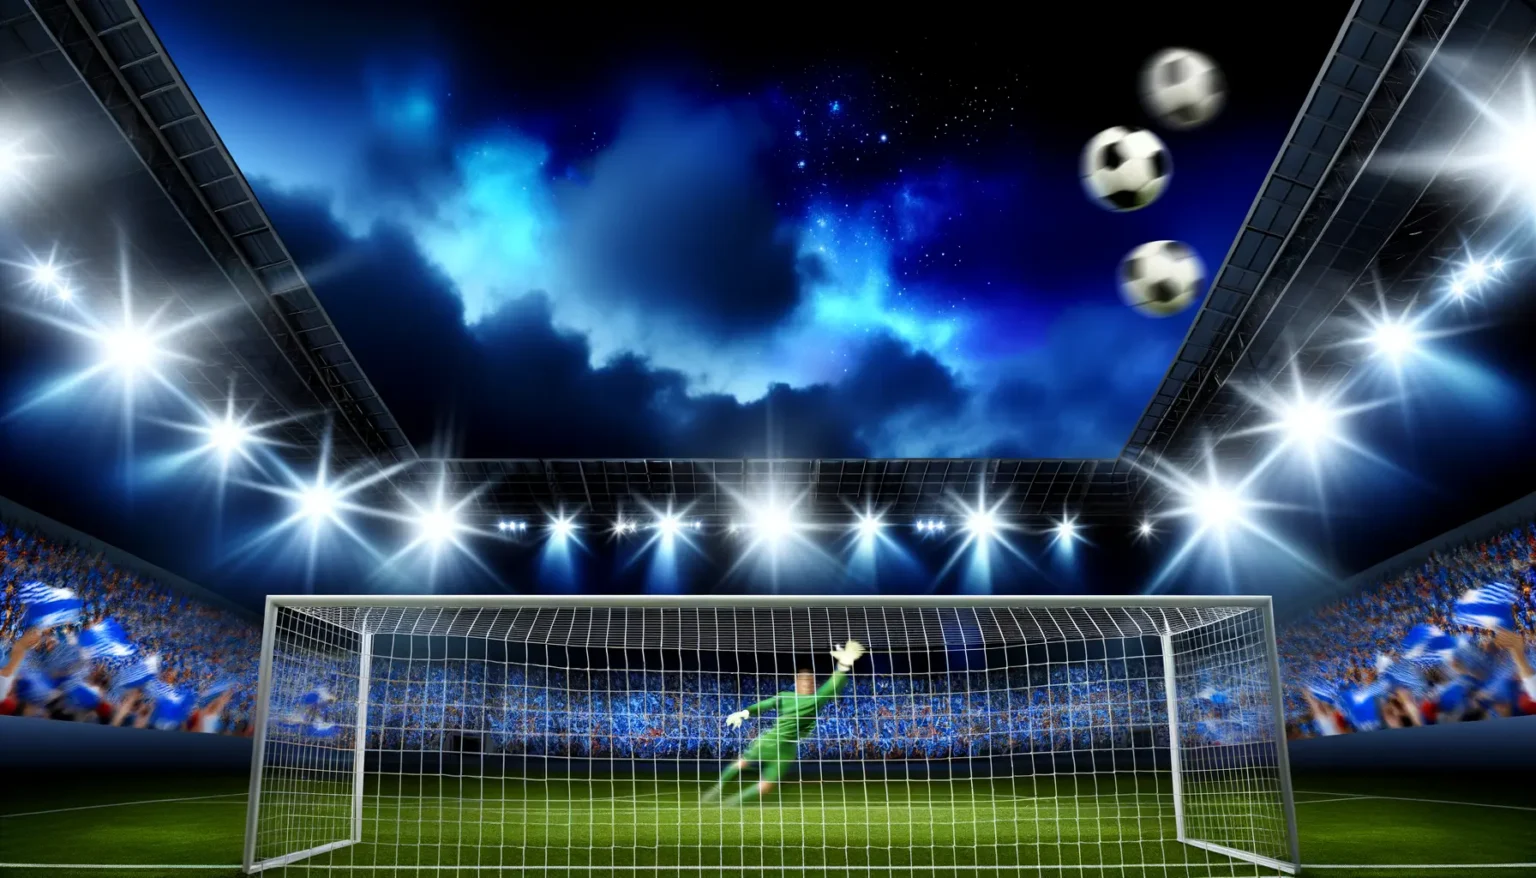 Eine lebendige Szene in einem Fußballstadion bei Nacht, mit einem Torwart, der sich in der Luft nach einem Ball streckt, während rundherum mehrere Bälle im Flug zu sehen sind. Lichter blitzen von Flutlichtern, und das Publikum auf den Rängen erscheint in Blautönen, was eine energiegeladene Atmosphäre schafft.